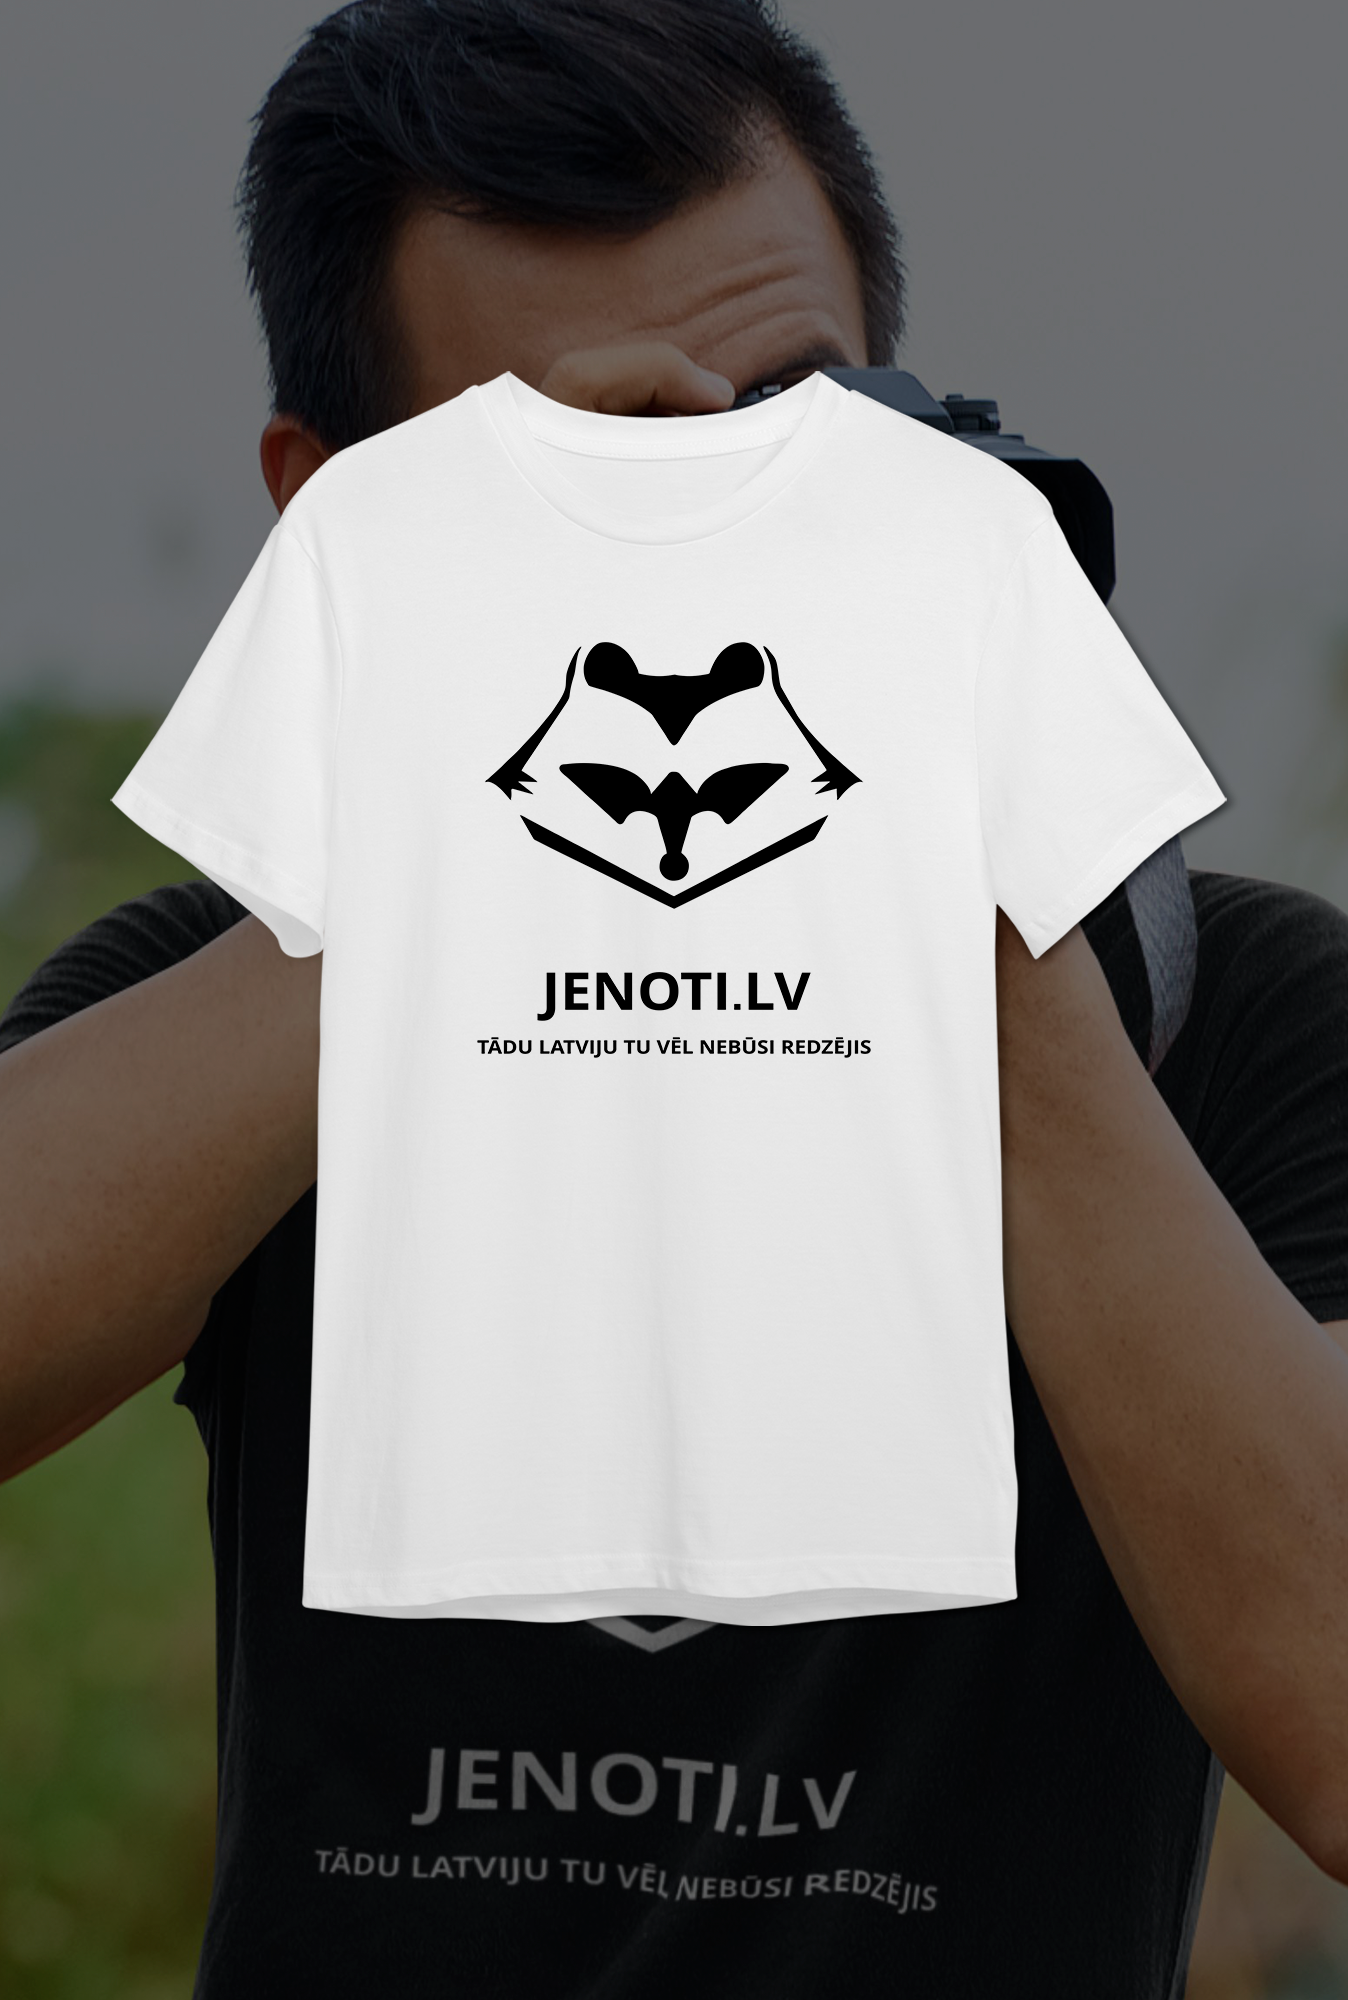 ''Jenoti.lv'' Cotton T-Shirt